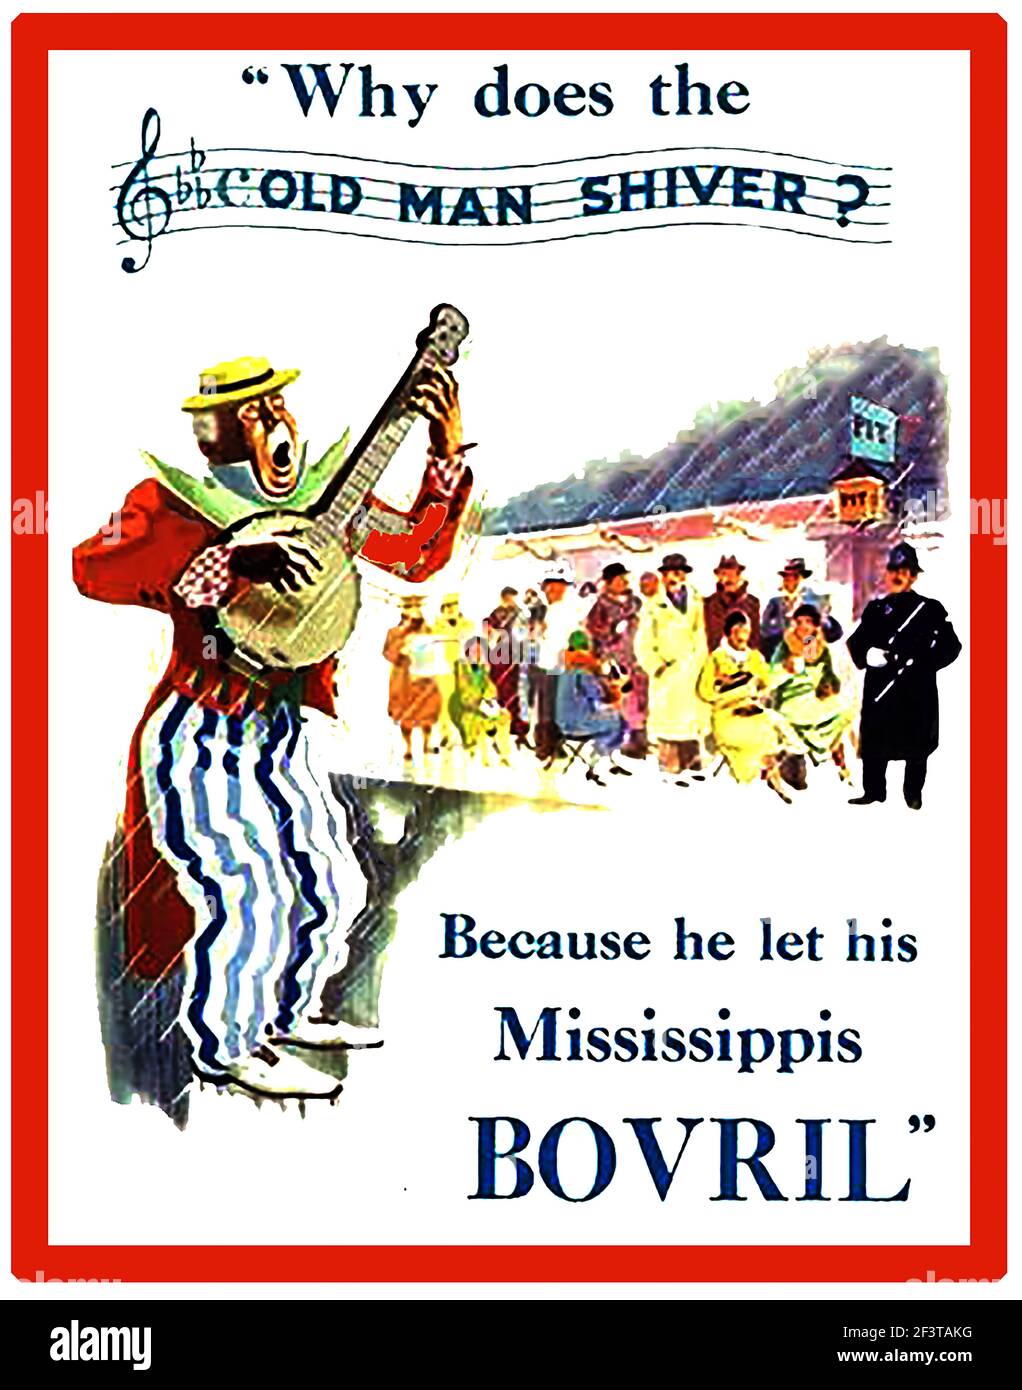 Eine frühe britische Werbung für Bovril, in der ein Spielmann vor einer Kinoleute in der Ran mit einem britischen Bobby (Polizist), der dabeisteht, spielt. Stockfoto